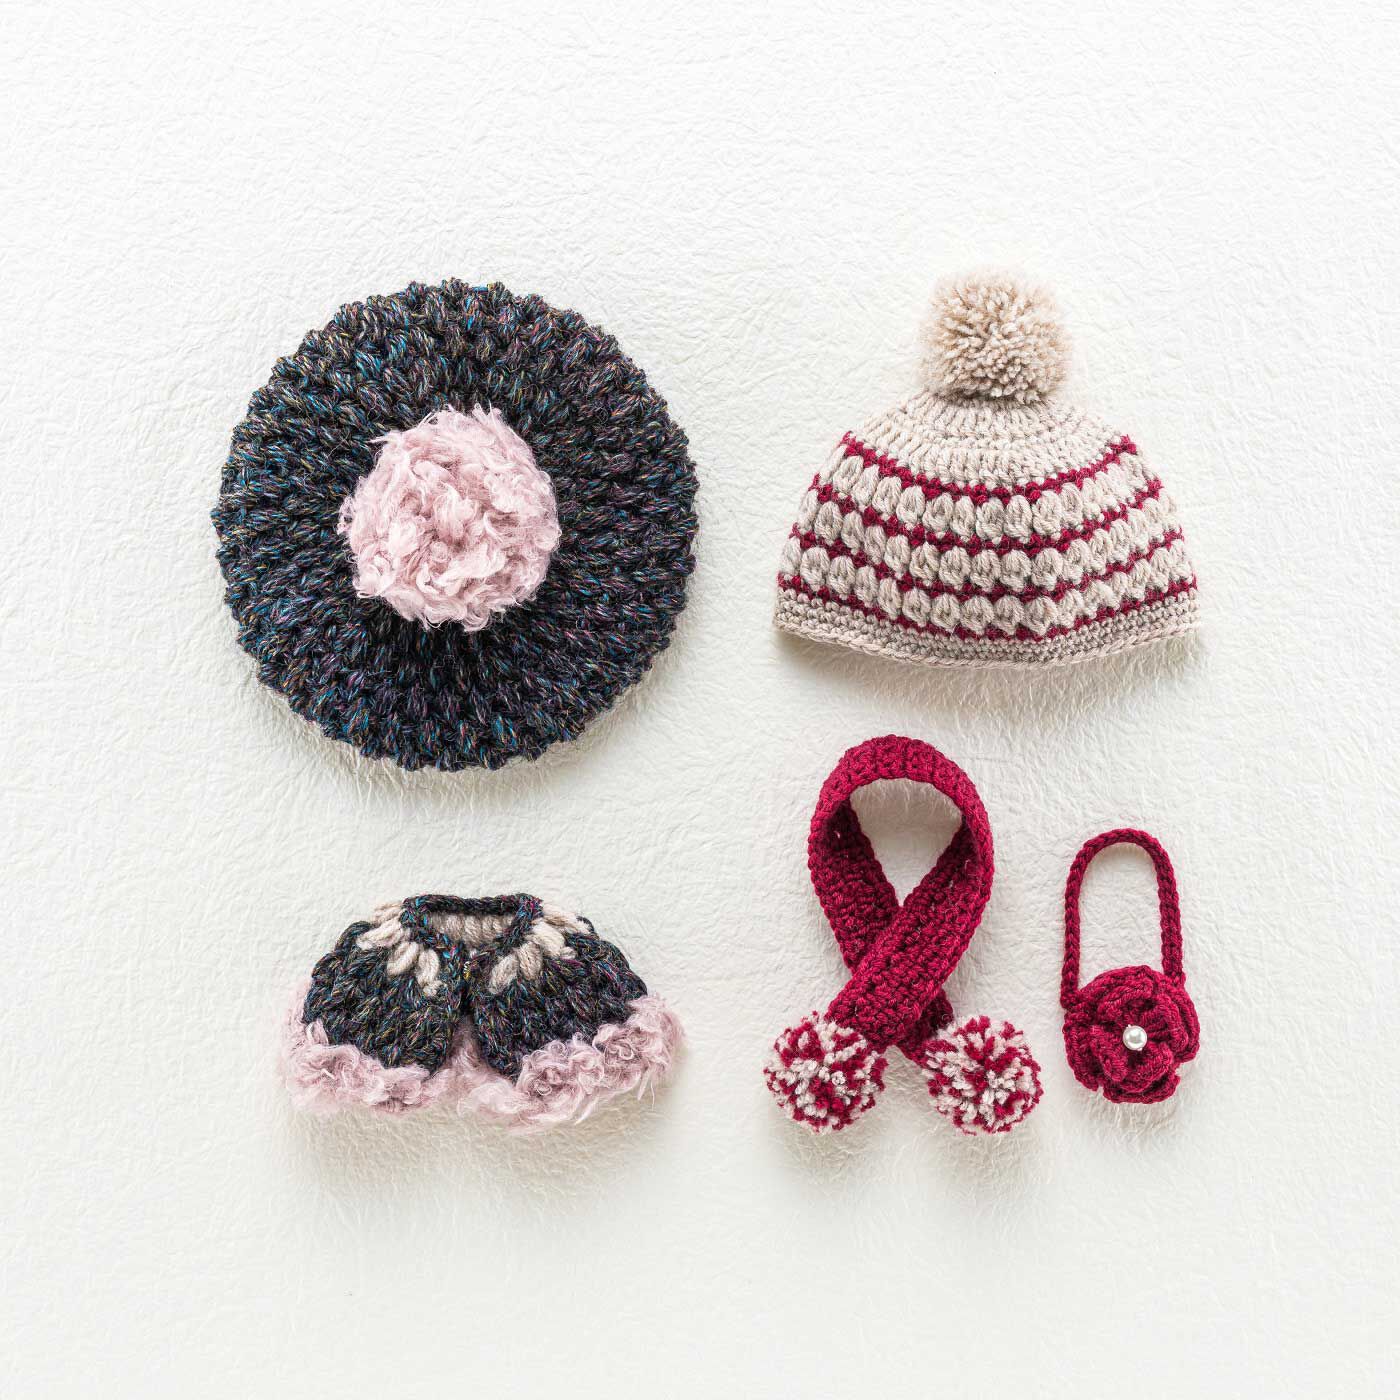 Couturier|寒さが待ち遠しくなる ドール用かぎ針編み帽子と小物のキット|LサイズかMサイズ、どちらかを選んで作れます（画像はLサイズ）。